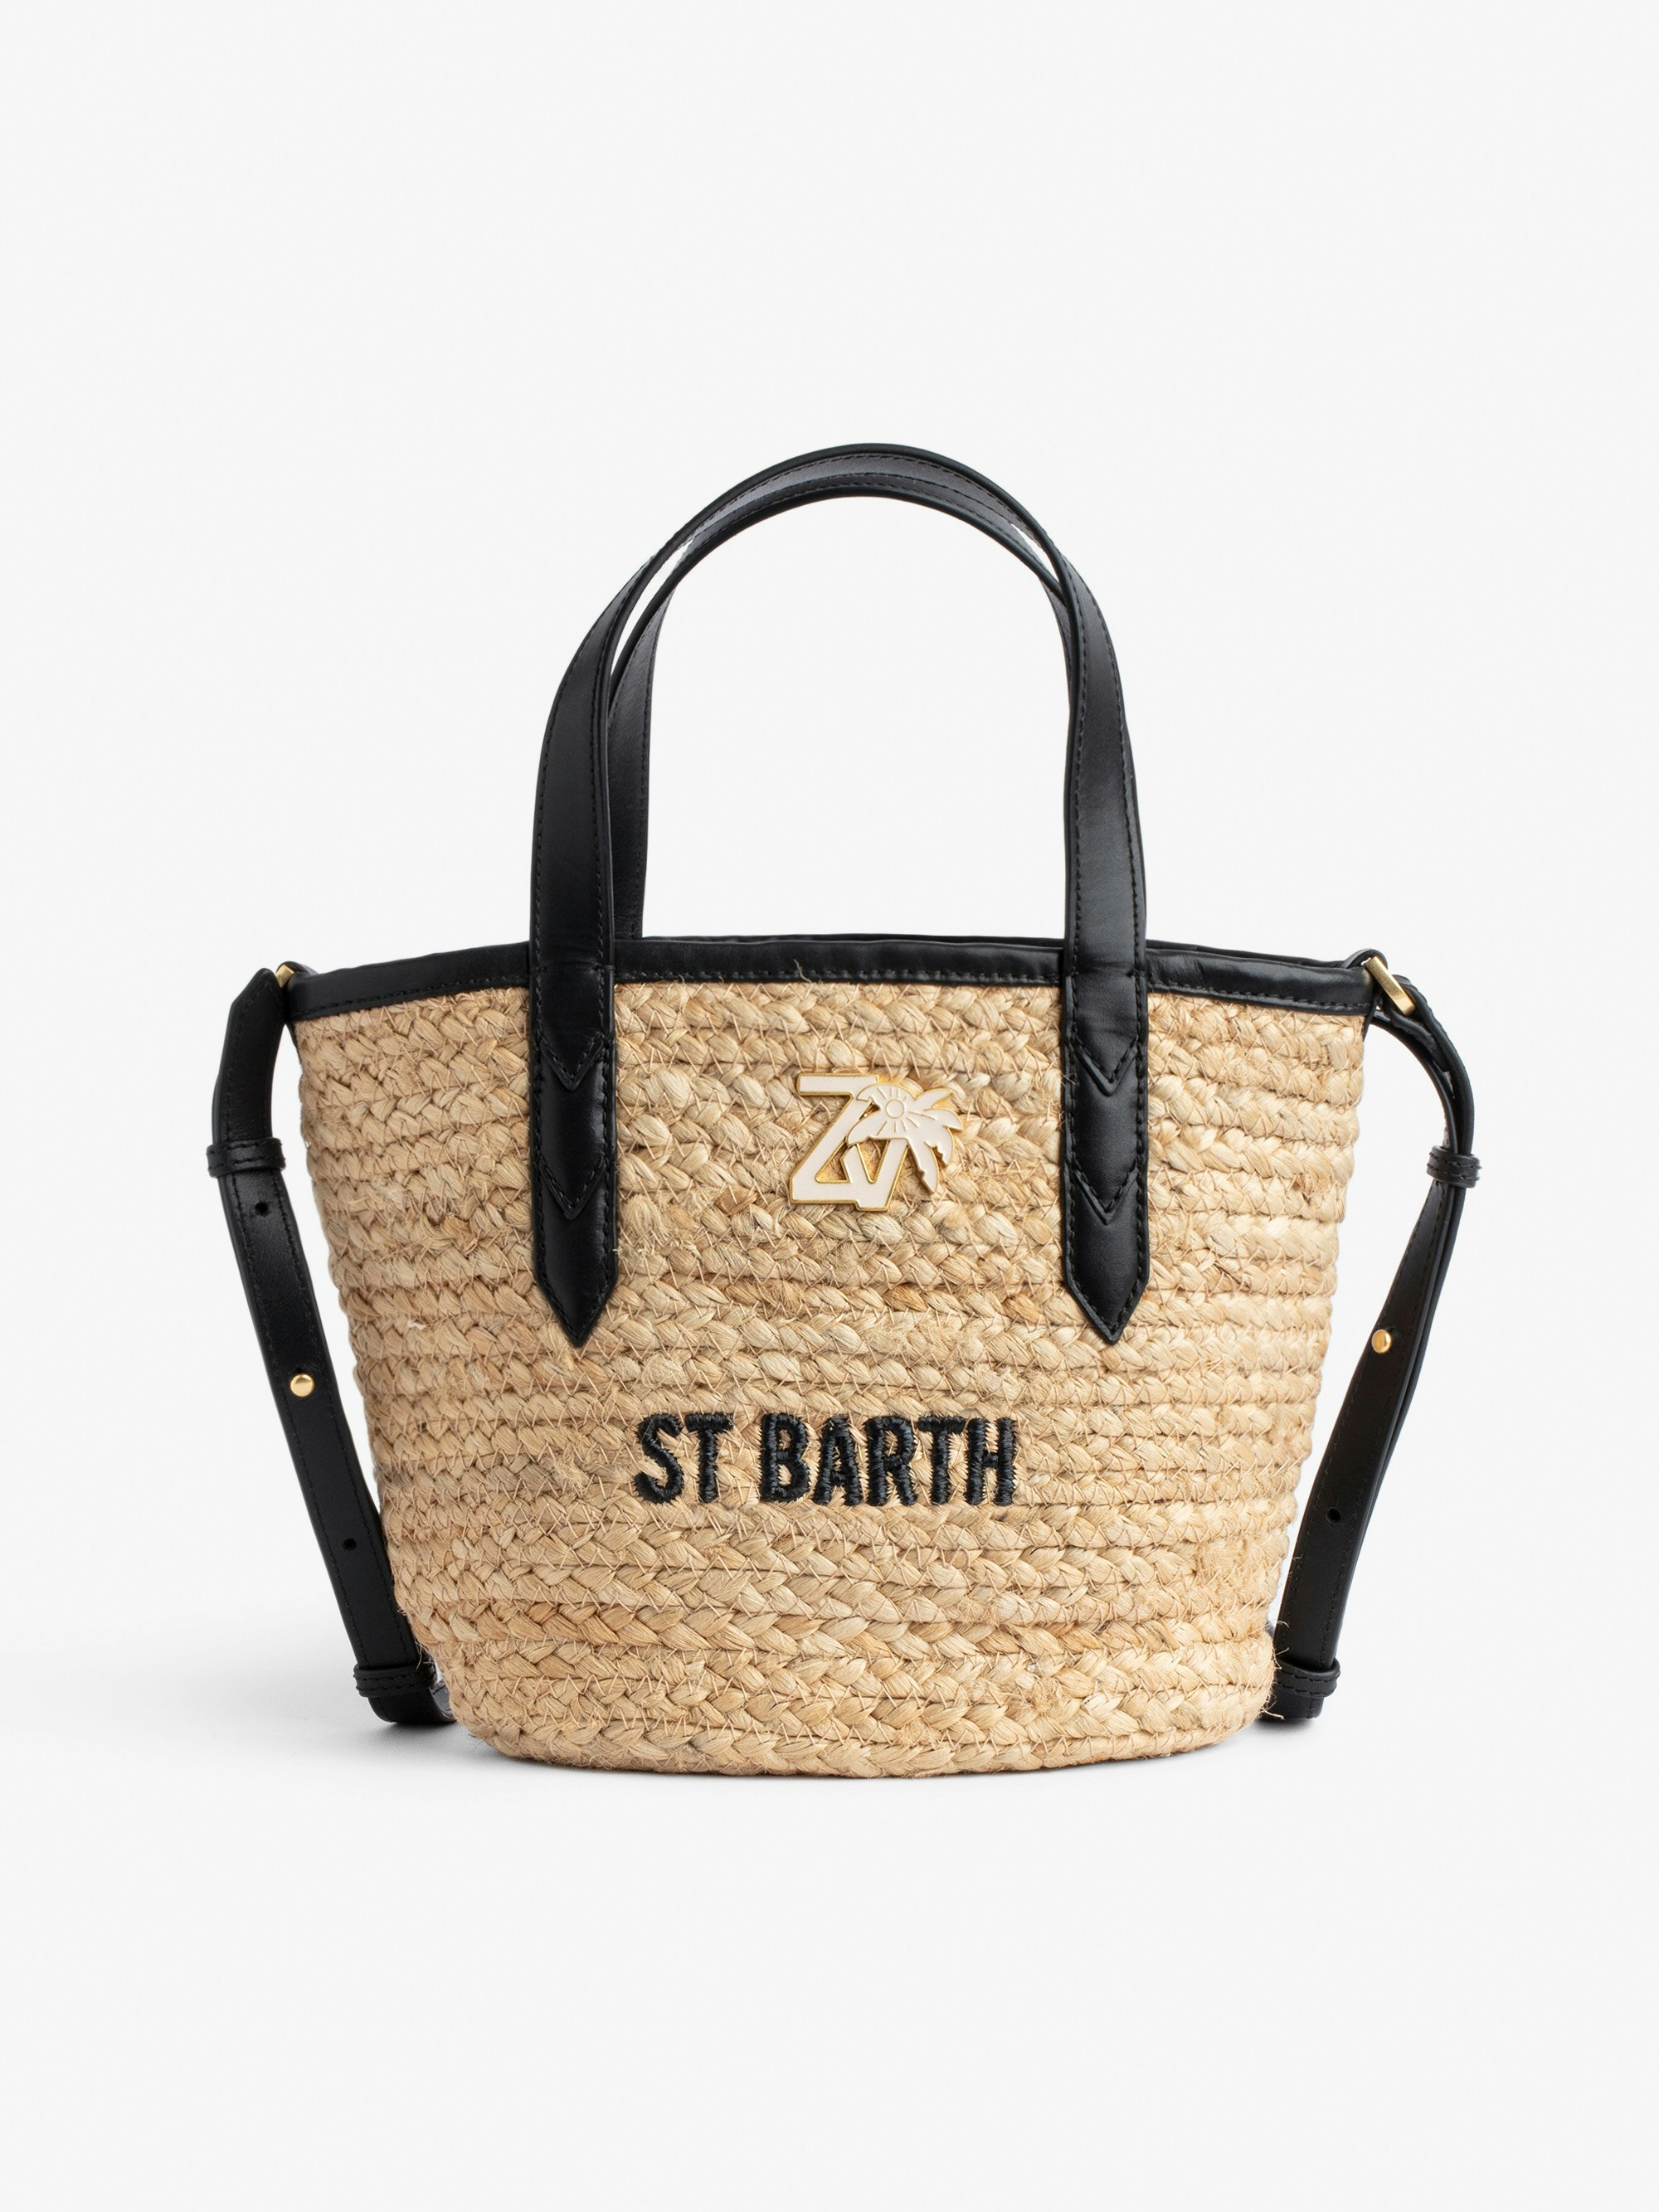 Borsa Le Baby Beach - Borsa in paglia con tracolla in pelle nera, con ricamo "St Barth" e impreziosita da un charm ZV - Donna